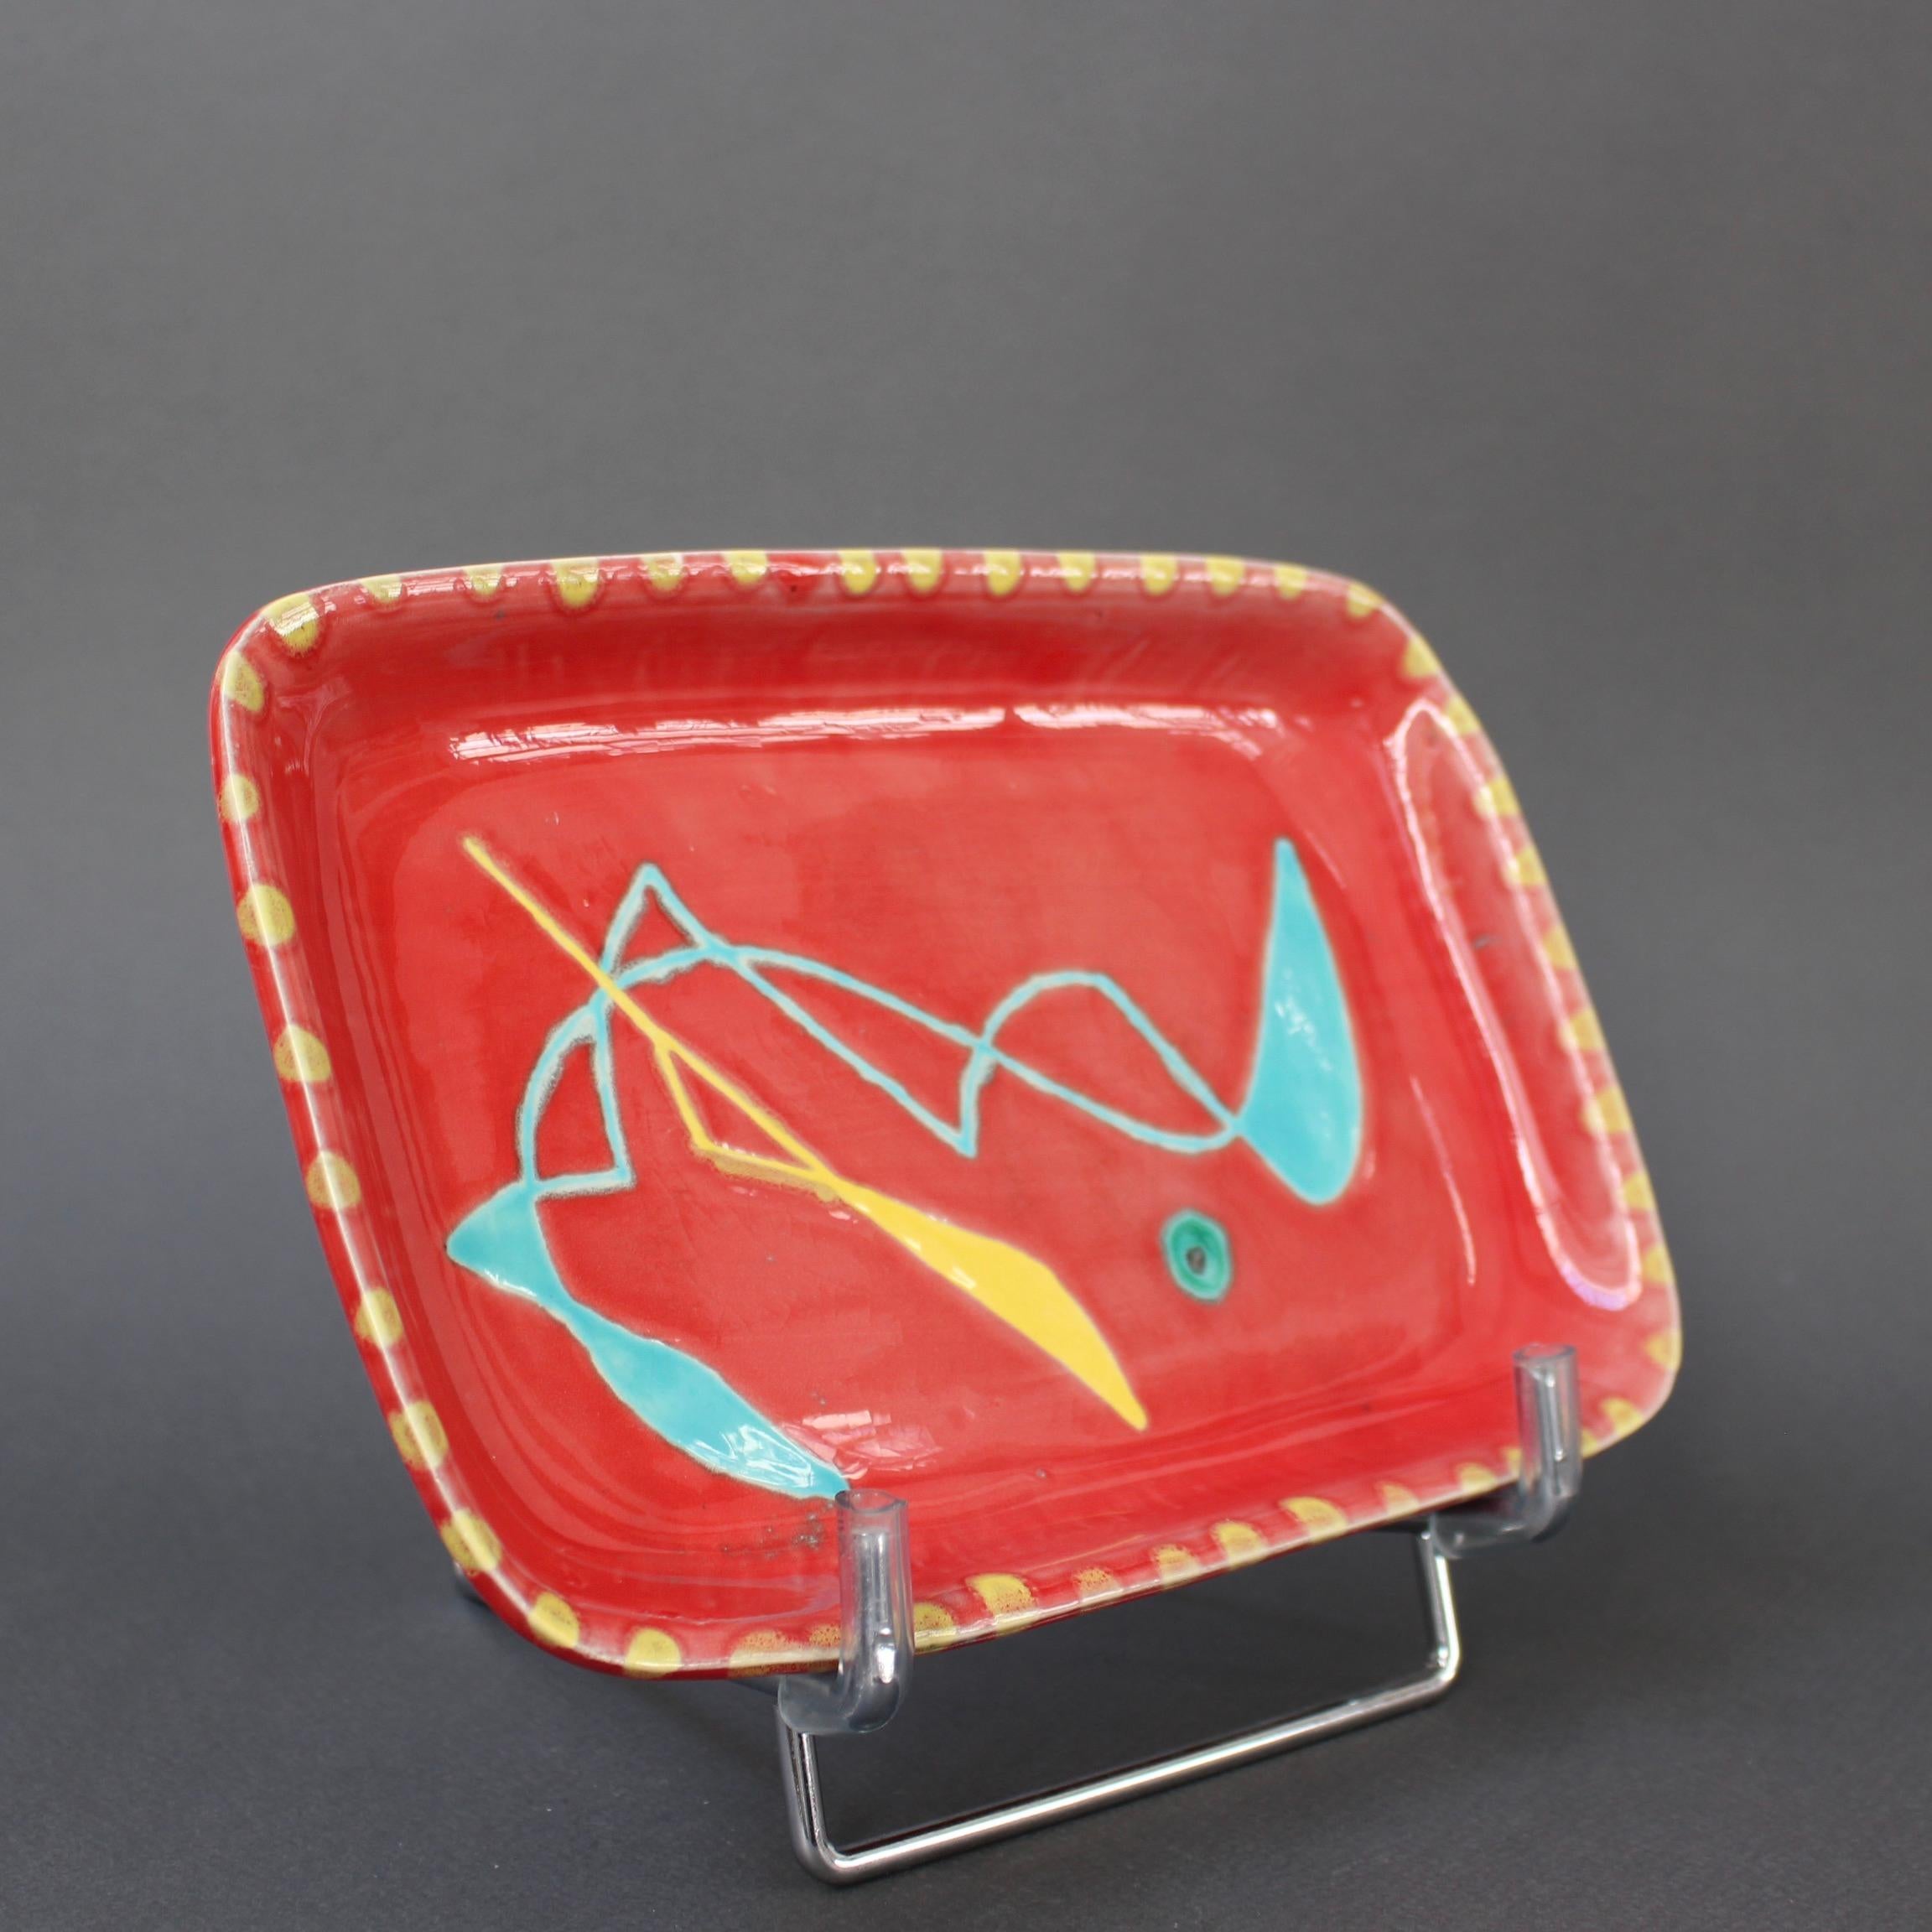 Plateau à hors-d'œuvre en céramique du milieu du siècle dernier, réalisé par Charles René Neveux pour l'atelier Cerenne (vers 1950). Cette céramique rare au motif abstrait est signée par Neveux lui-même. Une base rouge tomate est complétée par un